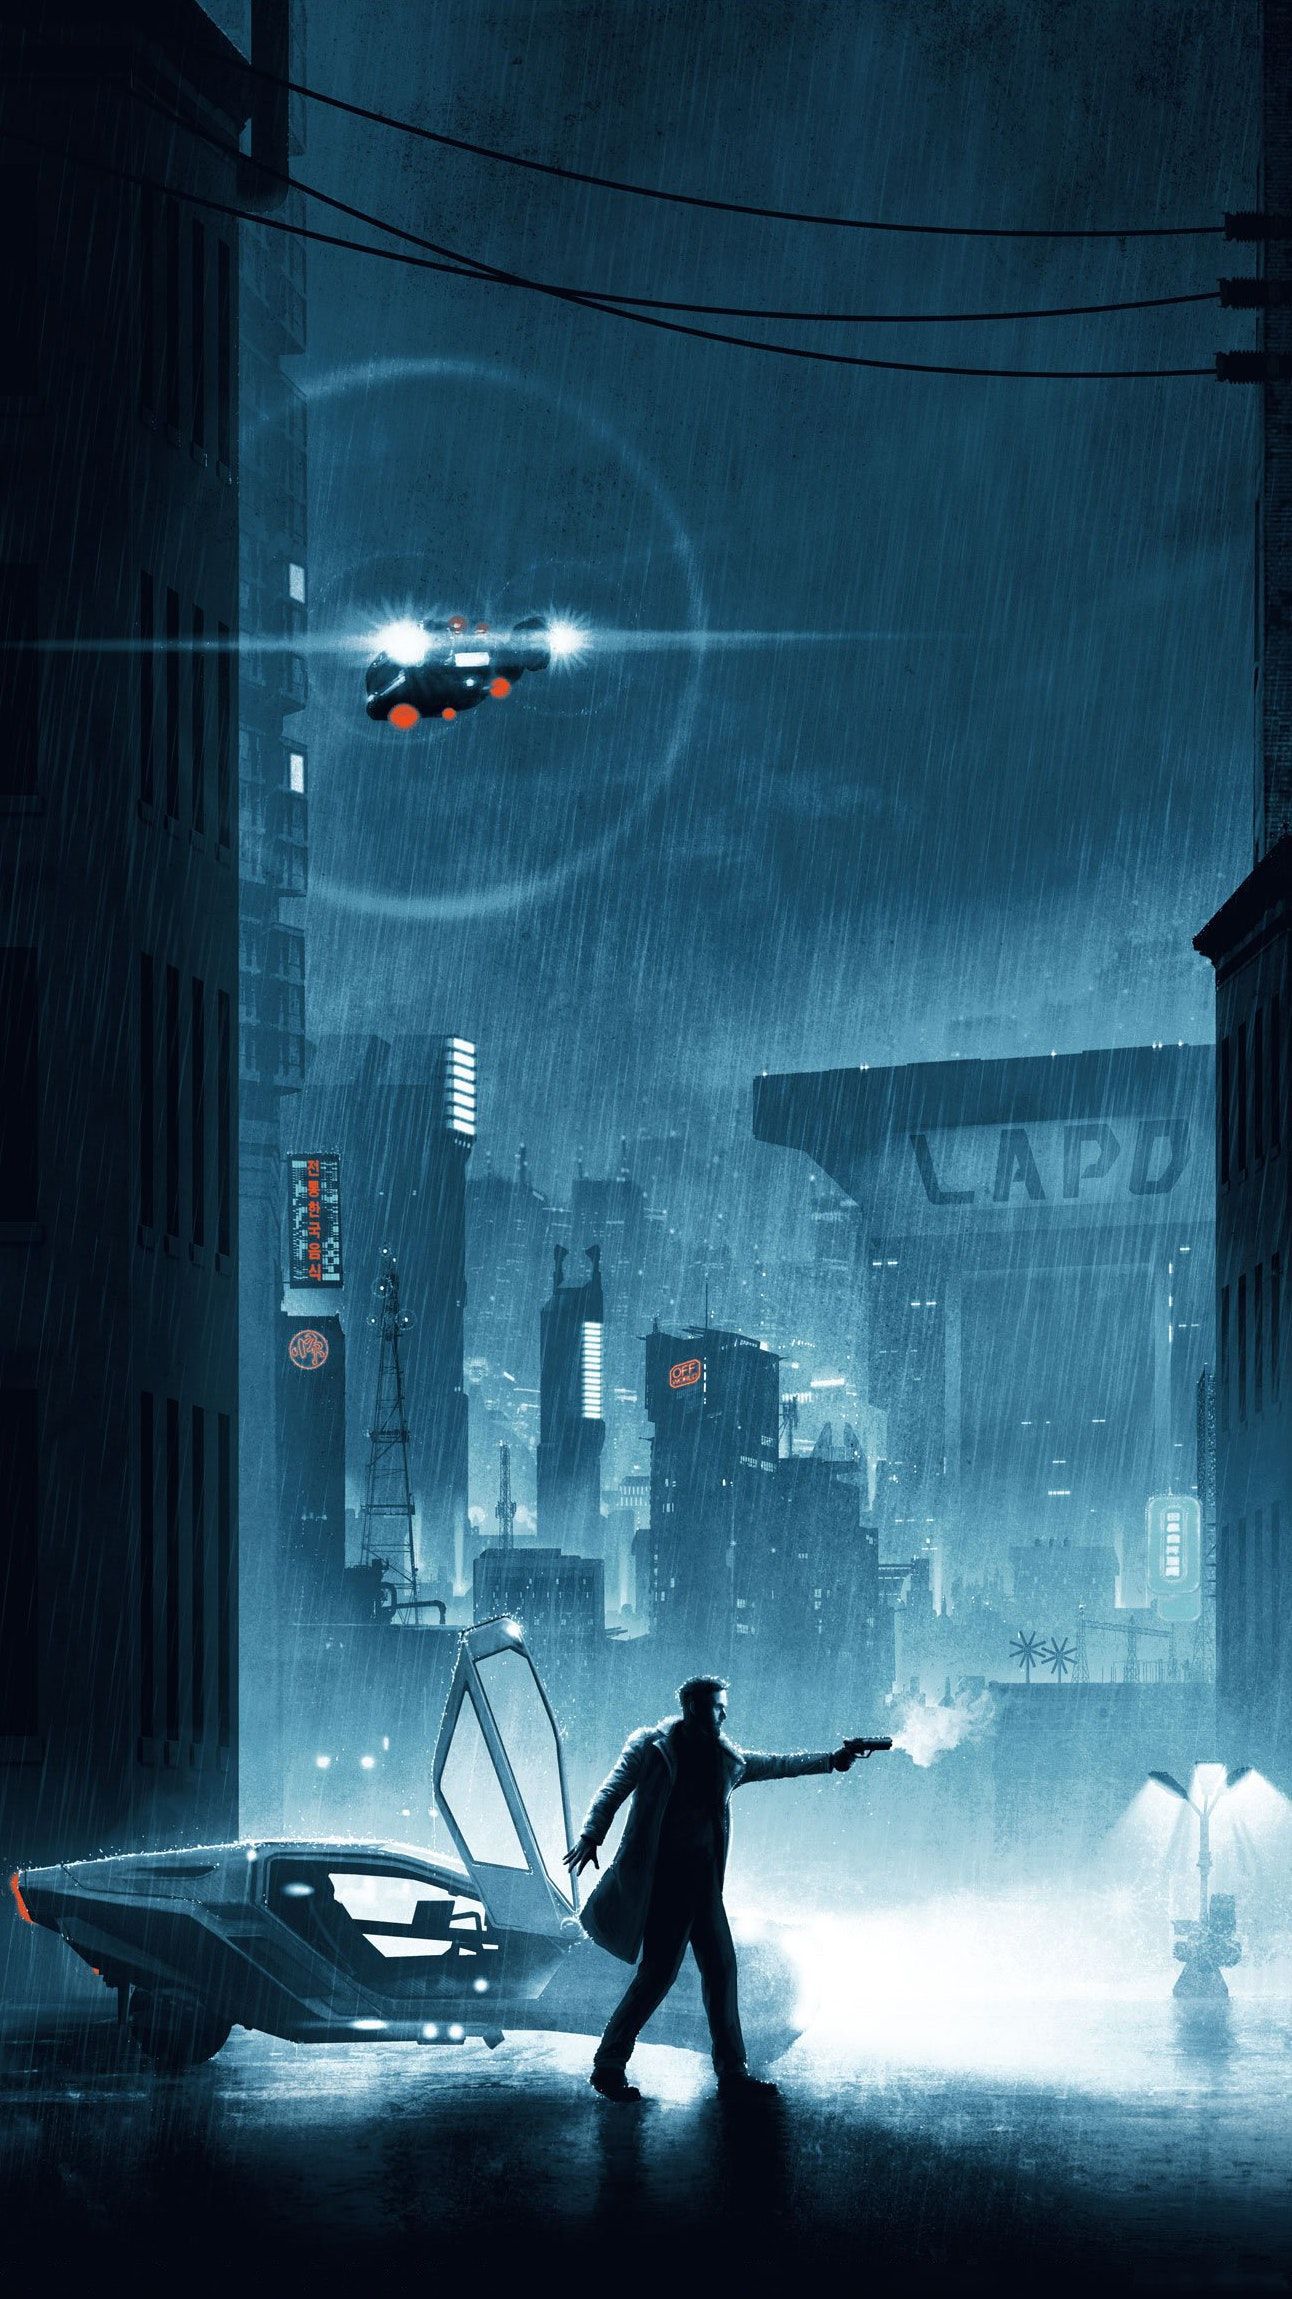 Best Blade Runner image. Blade runner, Runner, Blade runner 2049